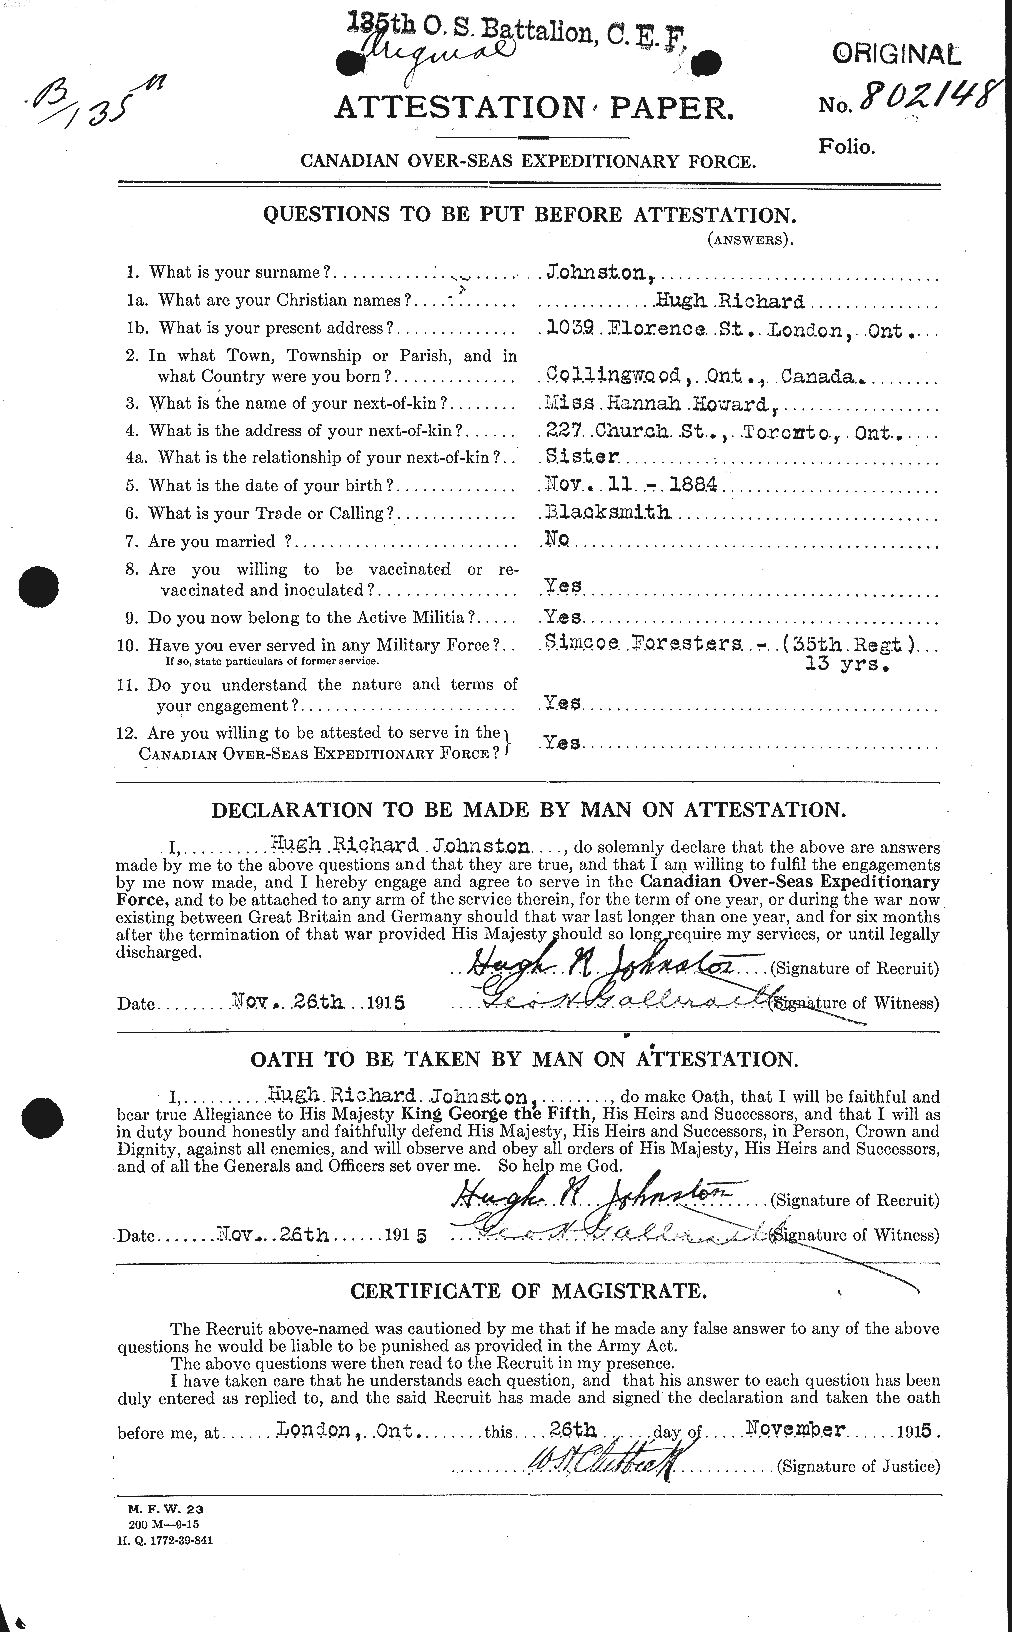 Dossiers du Personnel de la Première Guerre mondiale - CEC 422667a